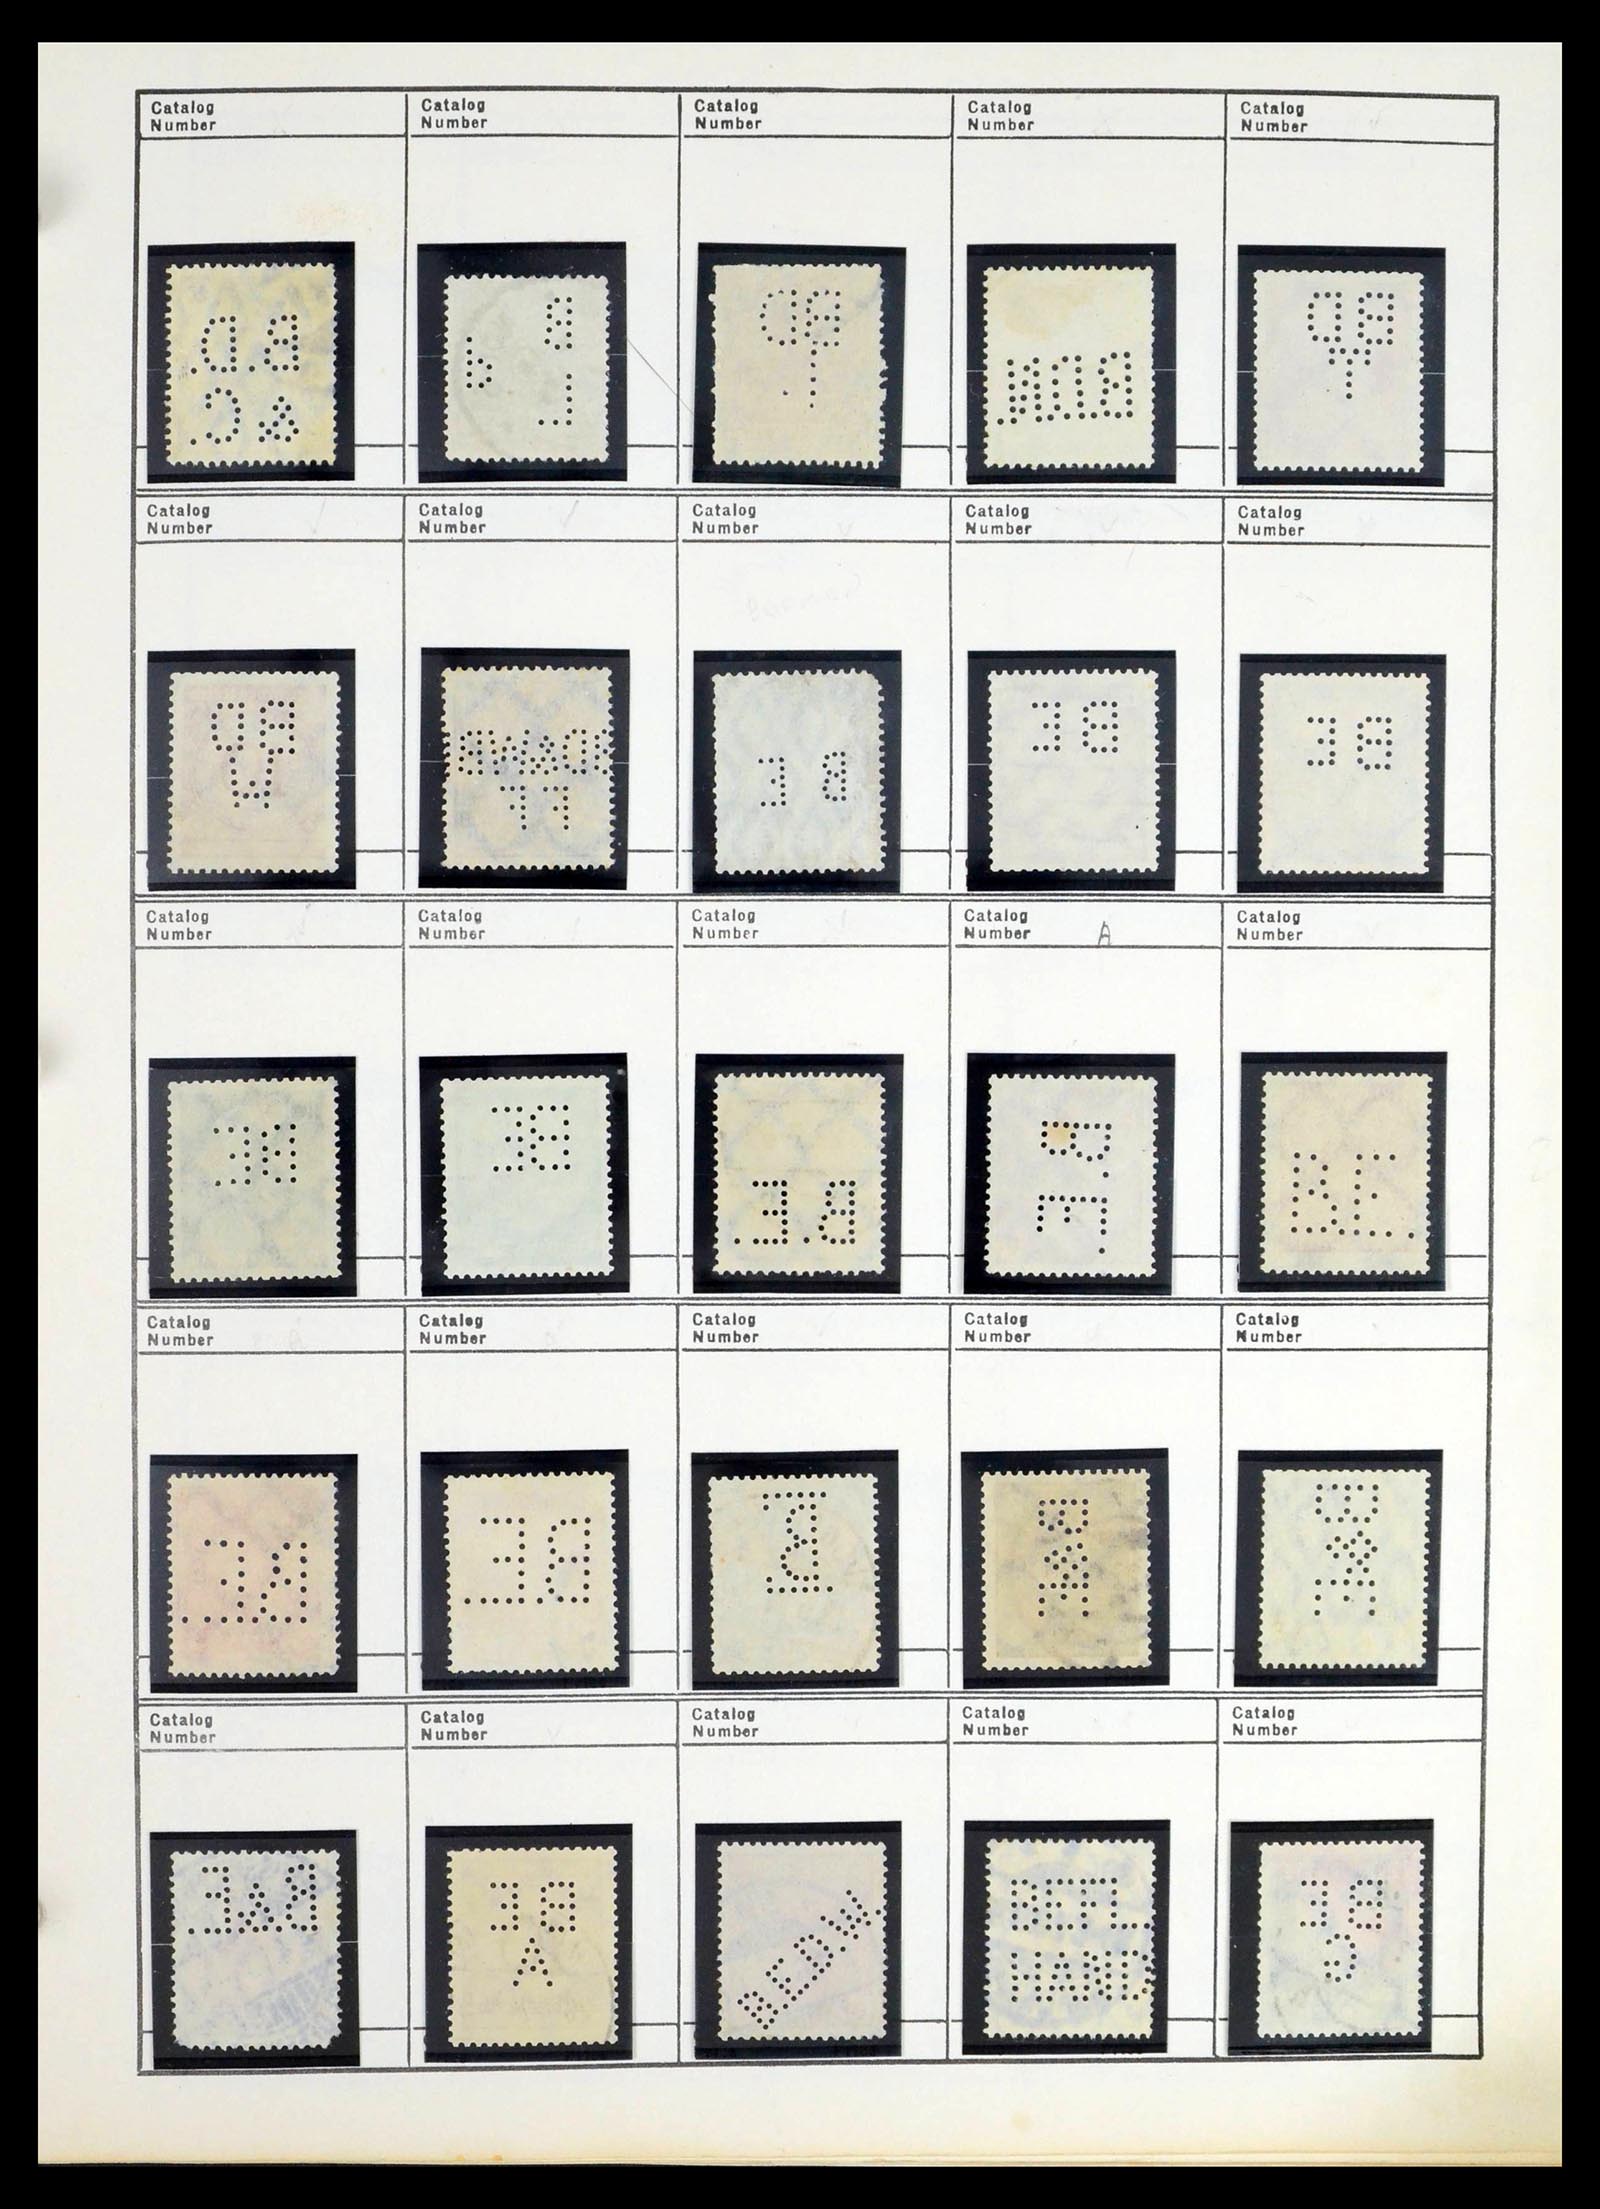 39480 0060 - Stamp collection 39480 German Reich perfins 1880-1955.